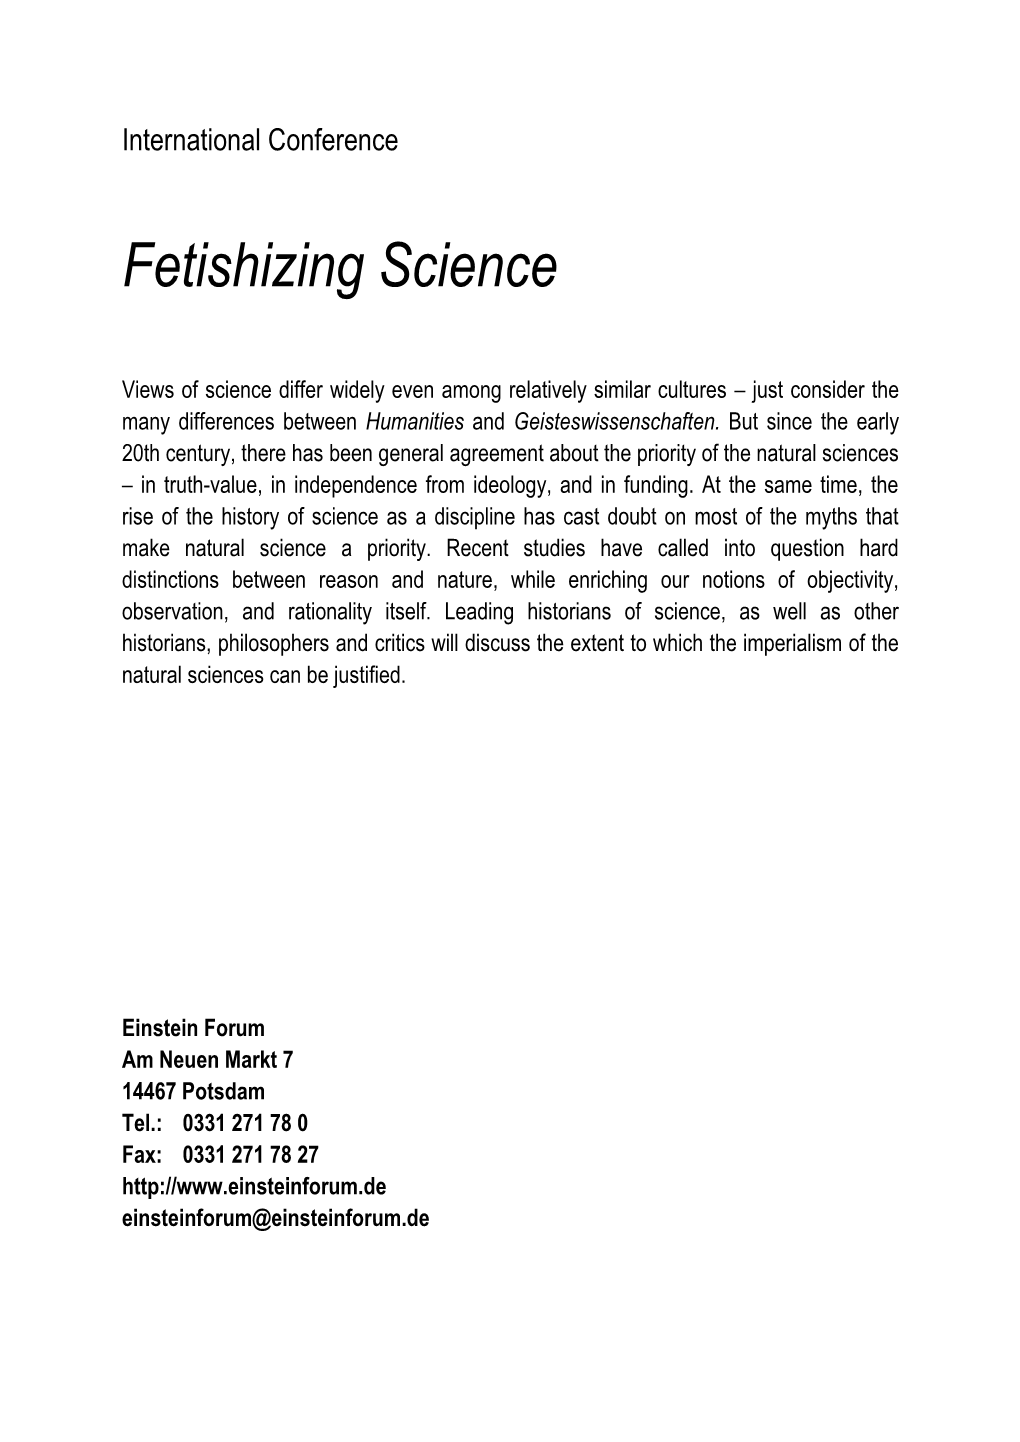 Fetishizing Science